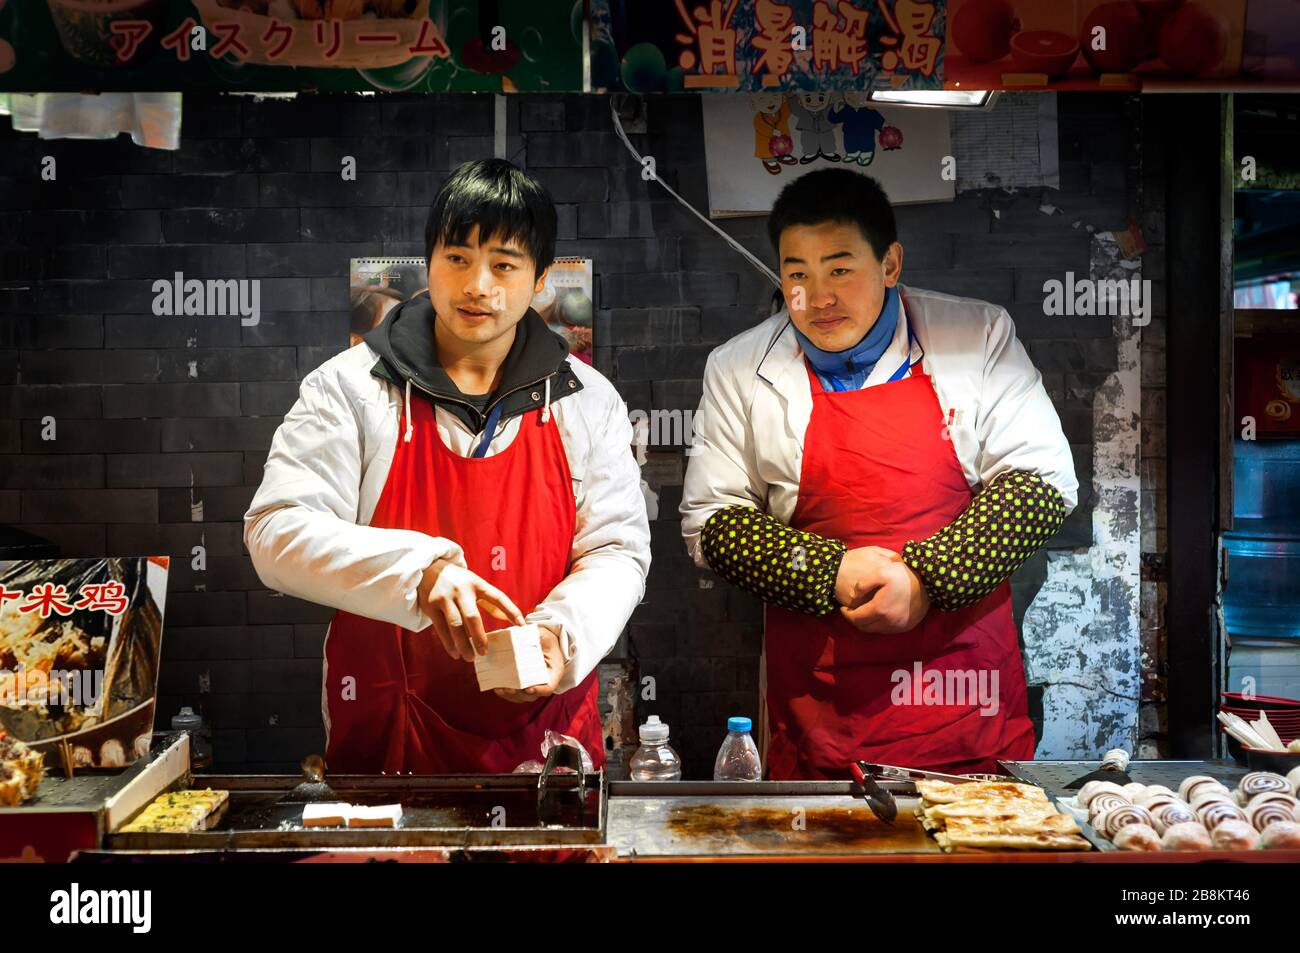 WANGFUJING NIGHT MARKET, BEIJING - DEC 25, 2013 - Two young snack vendors at Wangfujing snack street, Beijing Stock Photo